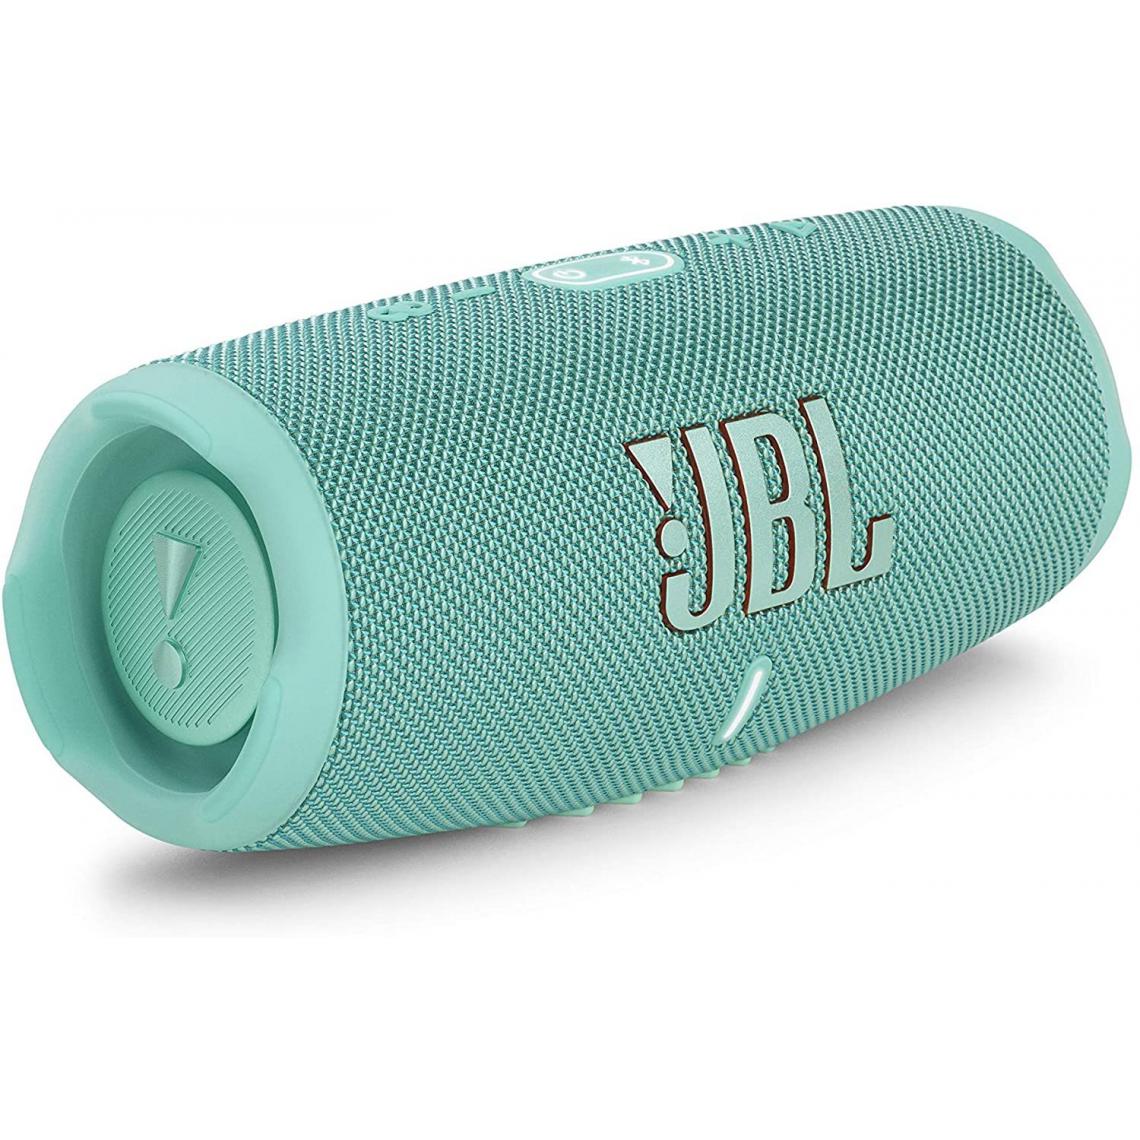 Chrono - JBL Charge 5-Enceinte Bluetooth portable avec chargeur intégré-Son puissant et basses profondes-25 heures d'autonomie-Résistance à l'eau et à la poussière,Turquoise - Enceintes Hifi